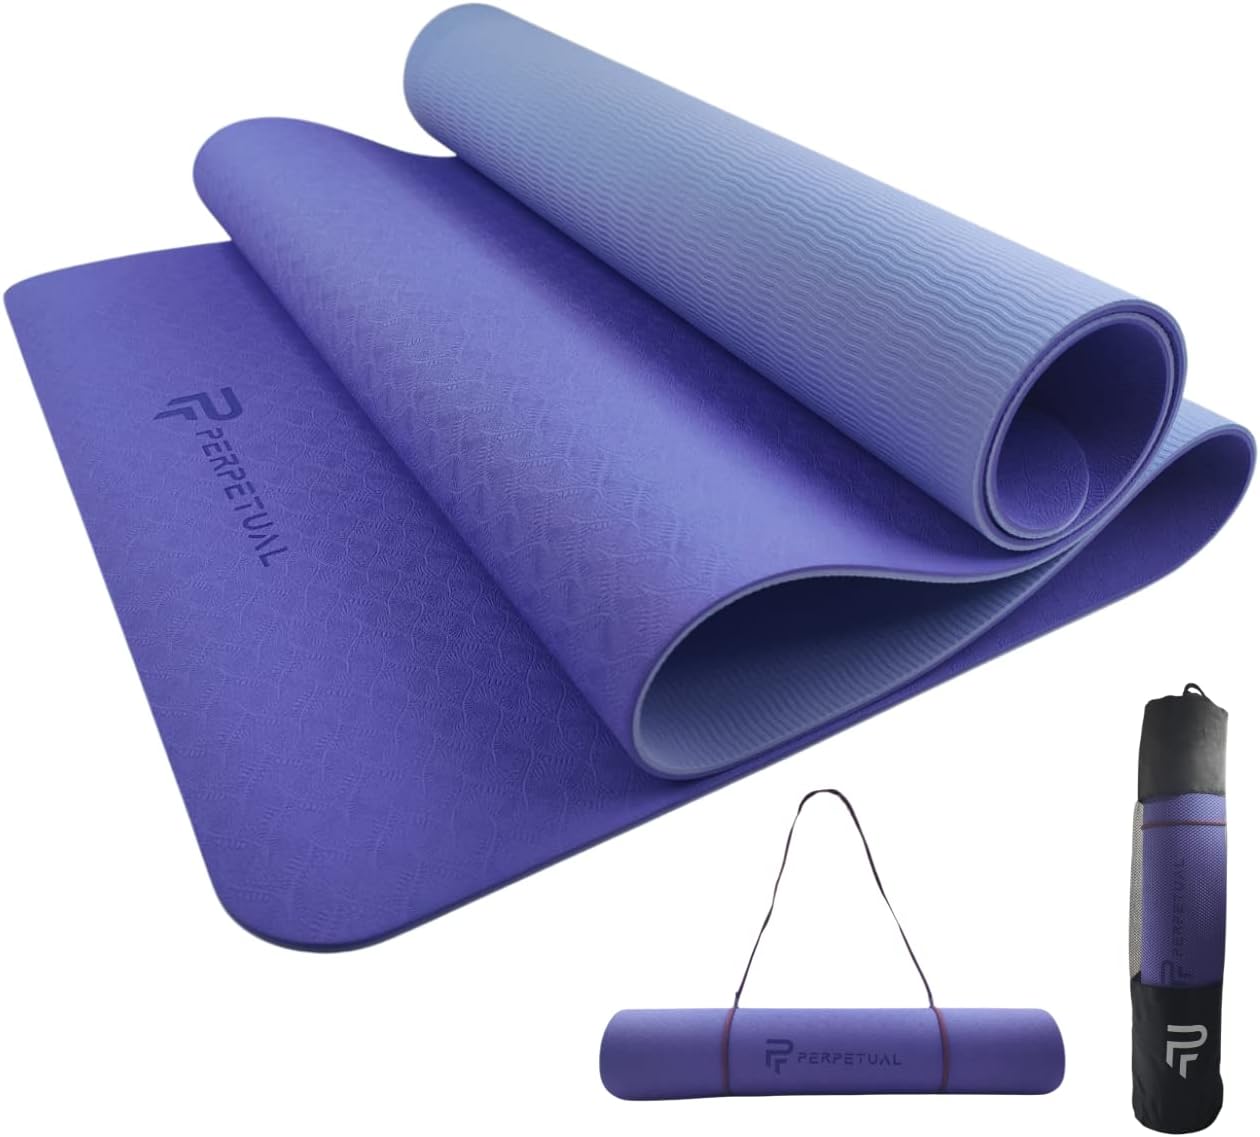 Esterilla Perpetual De Yoga Y Pilates Antideslizante De 6mm Con Correa Y Bolsa De Transporte